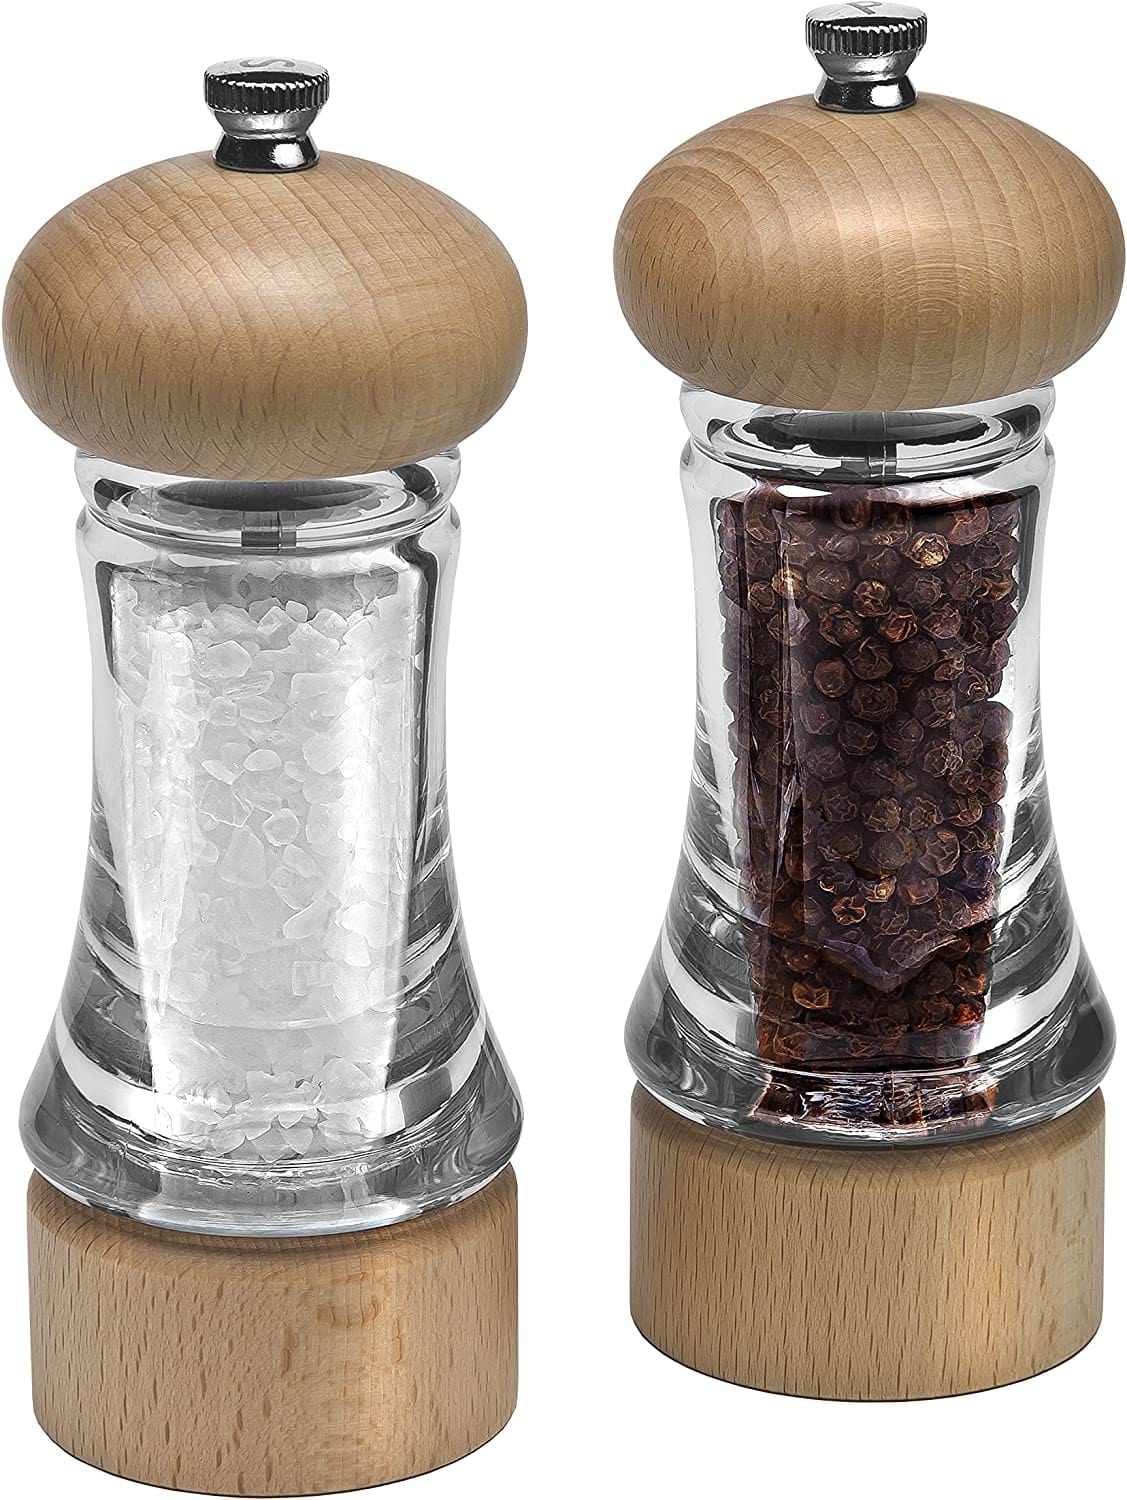 Cole & Mason 6.5 Beech Wood Salt and Pepper Mill Gift Set